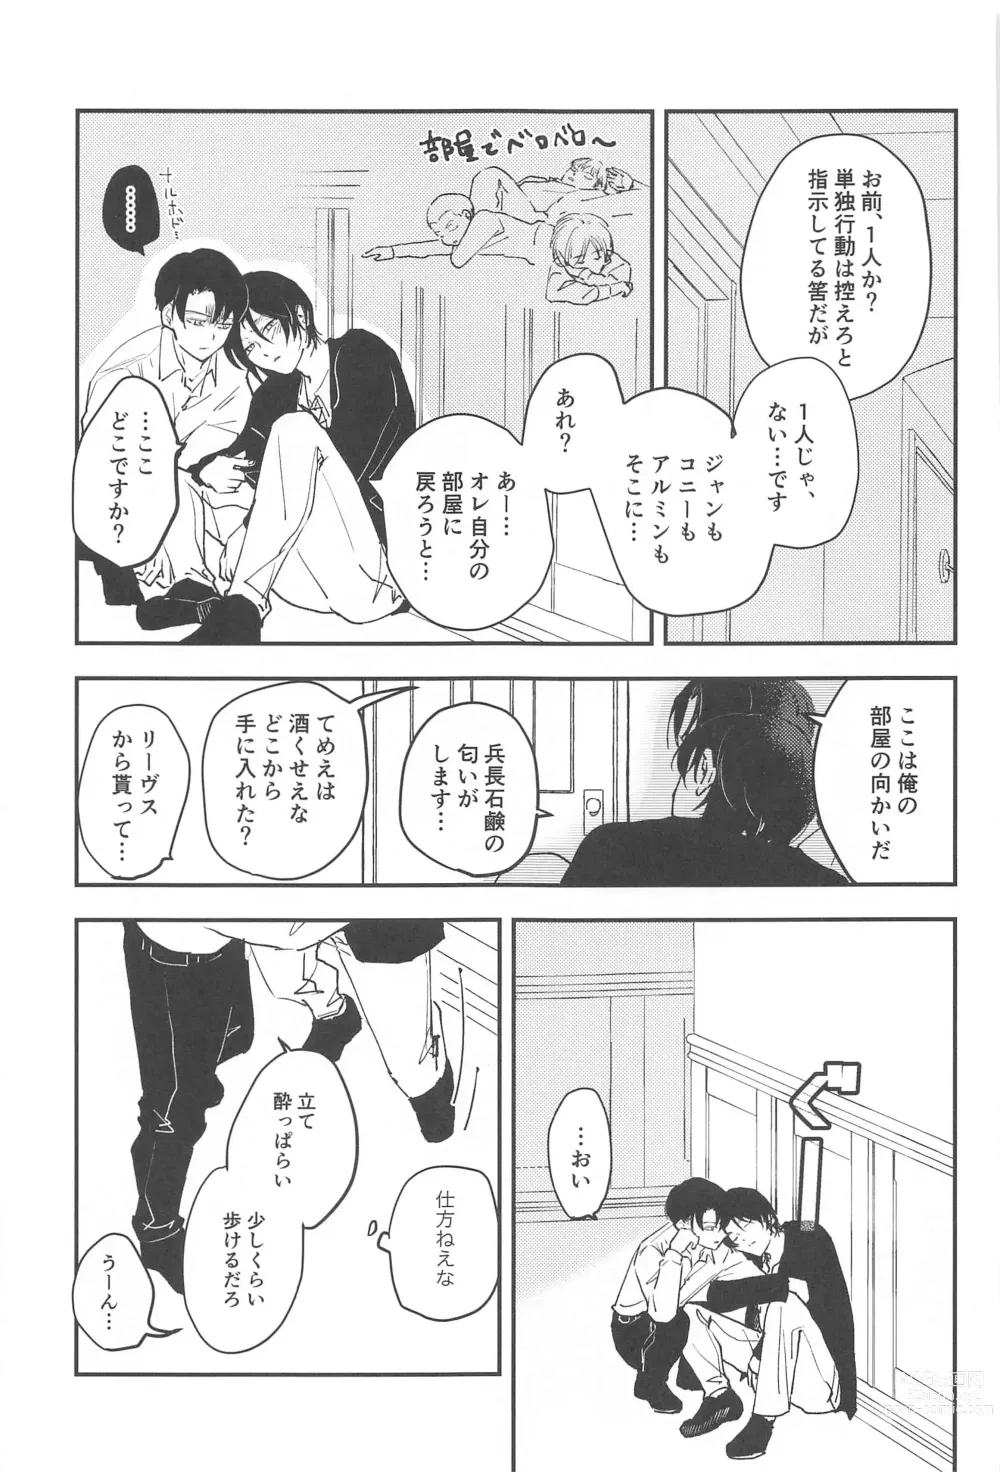 Page 4 of doujinshi Crush